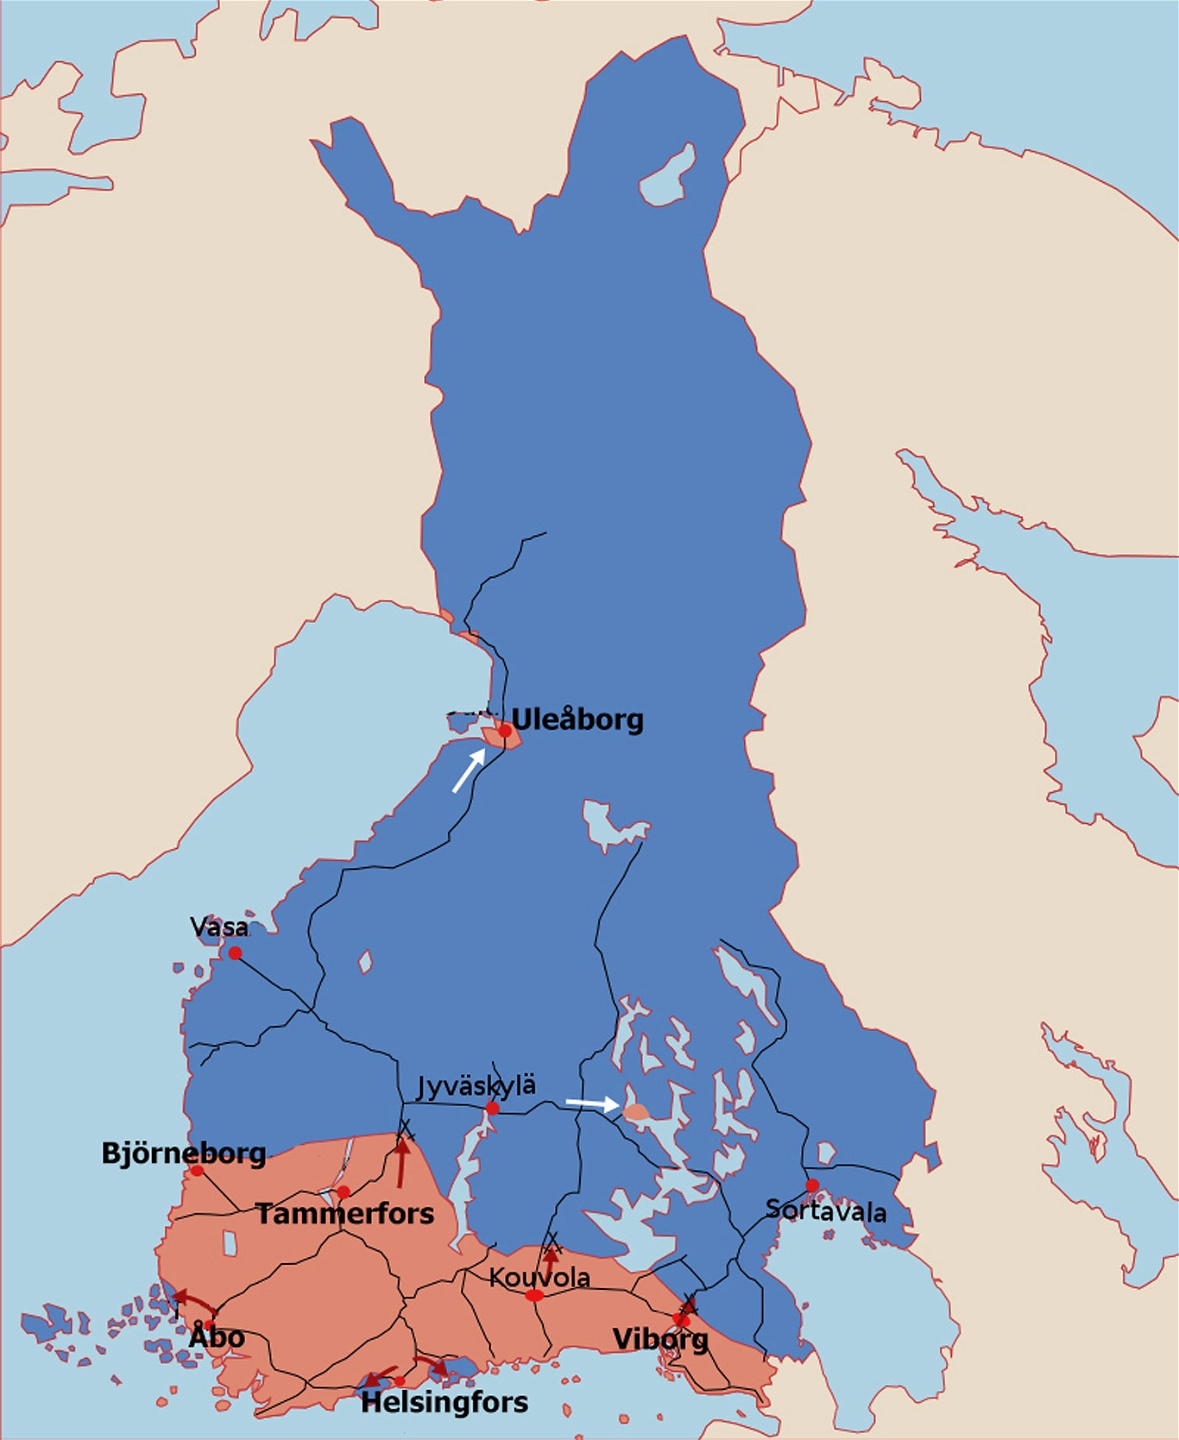 Vid krigets början kontrollerade den röda sidan huvuddelen av de industrialiserade
storstadsregionerna i södra Finland.